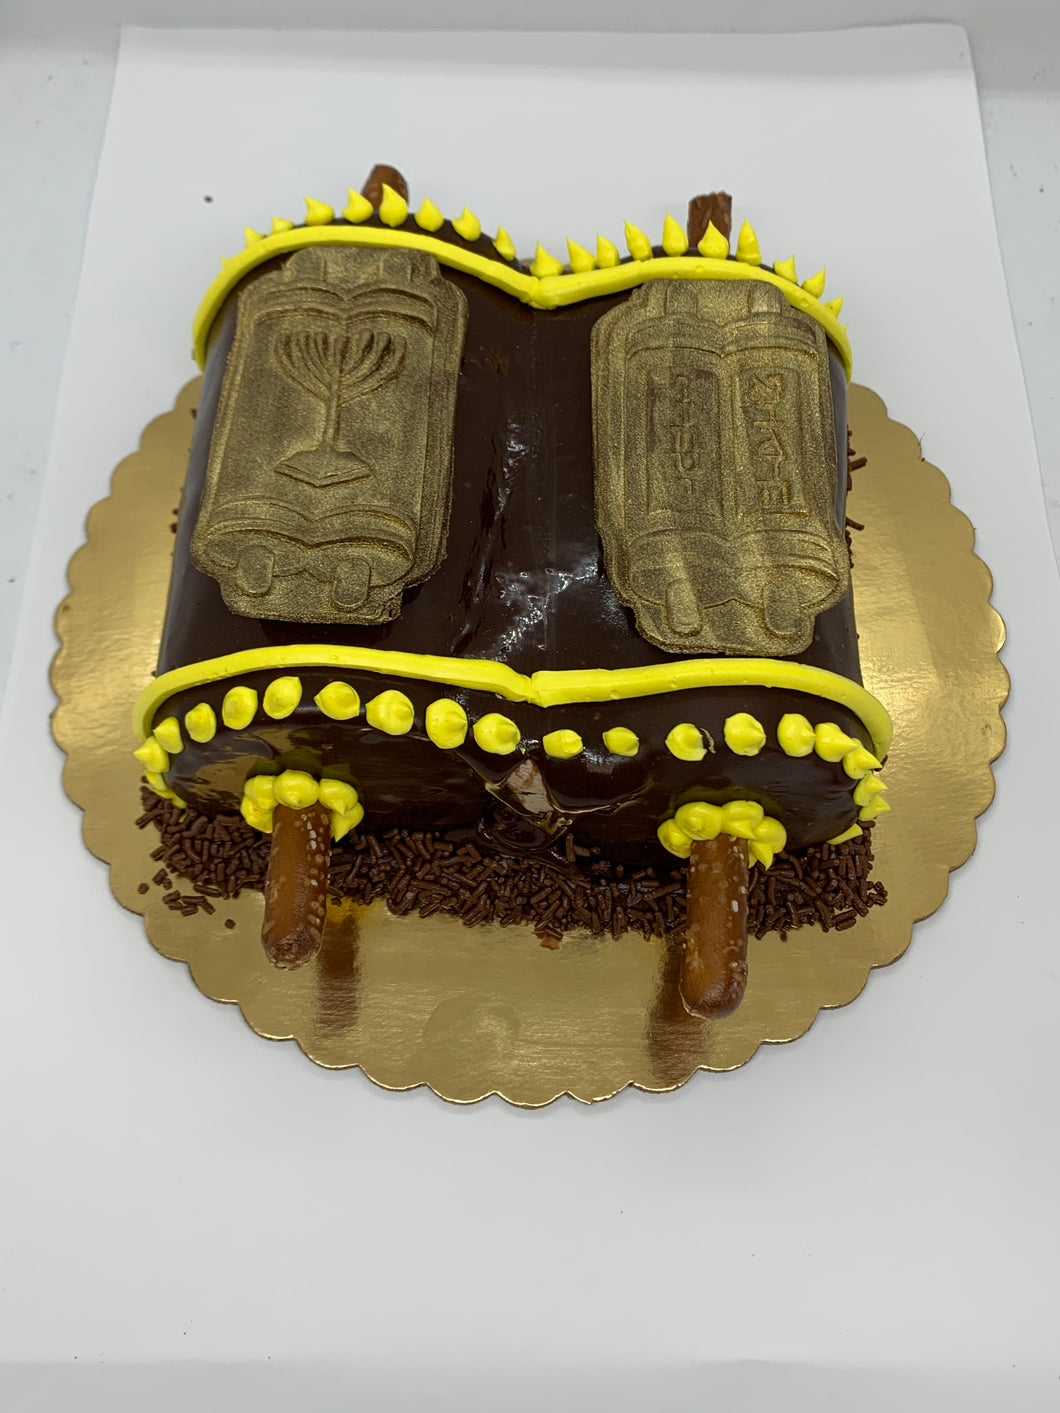 Torah Cake